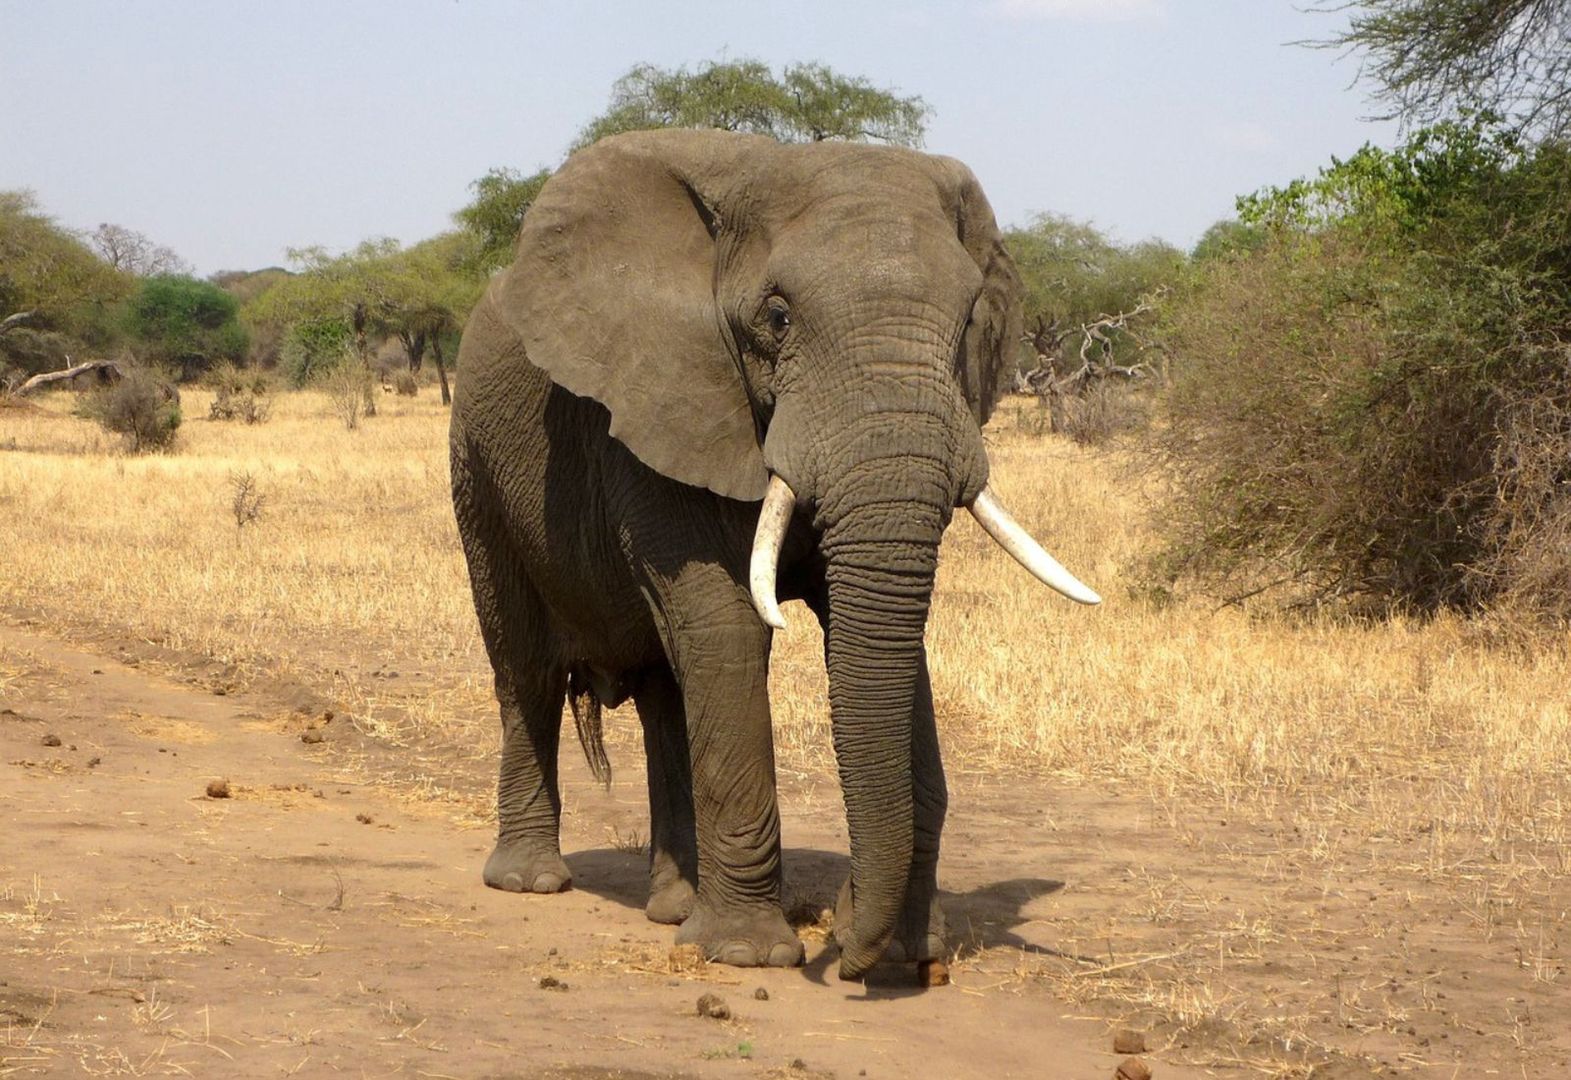 Tragedia podczas safari w Zambii. Słoń zaatakował samochód z turystami